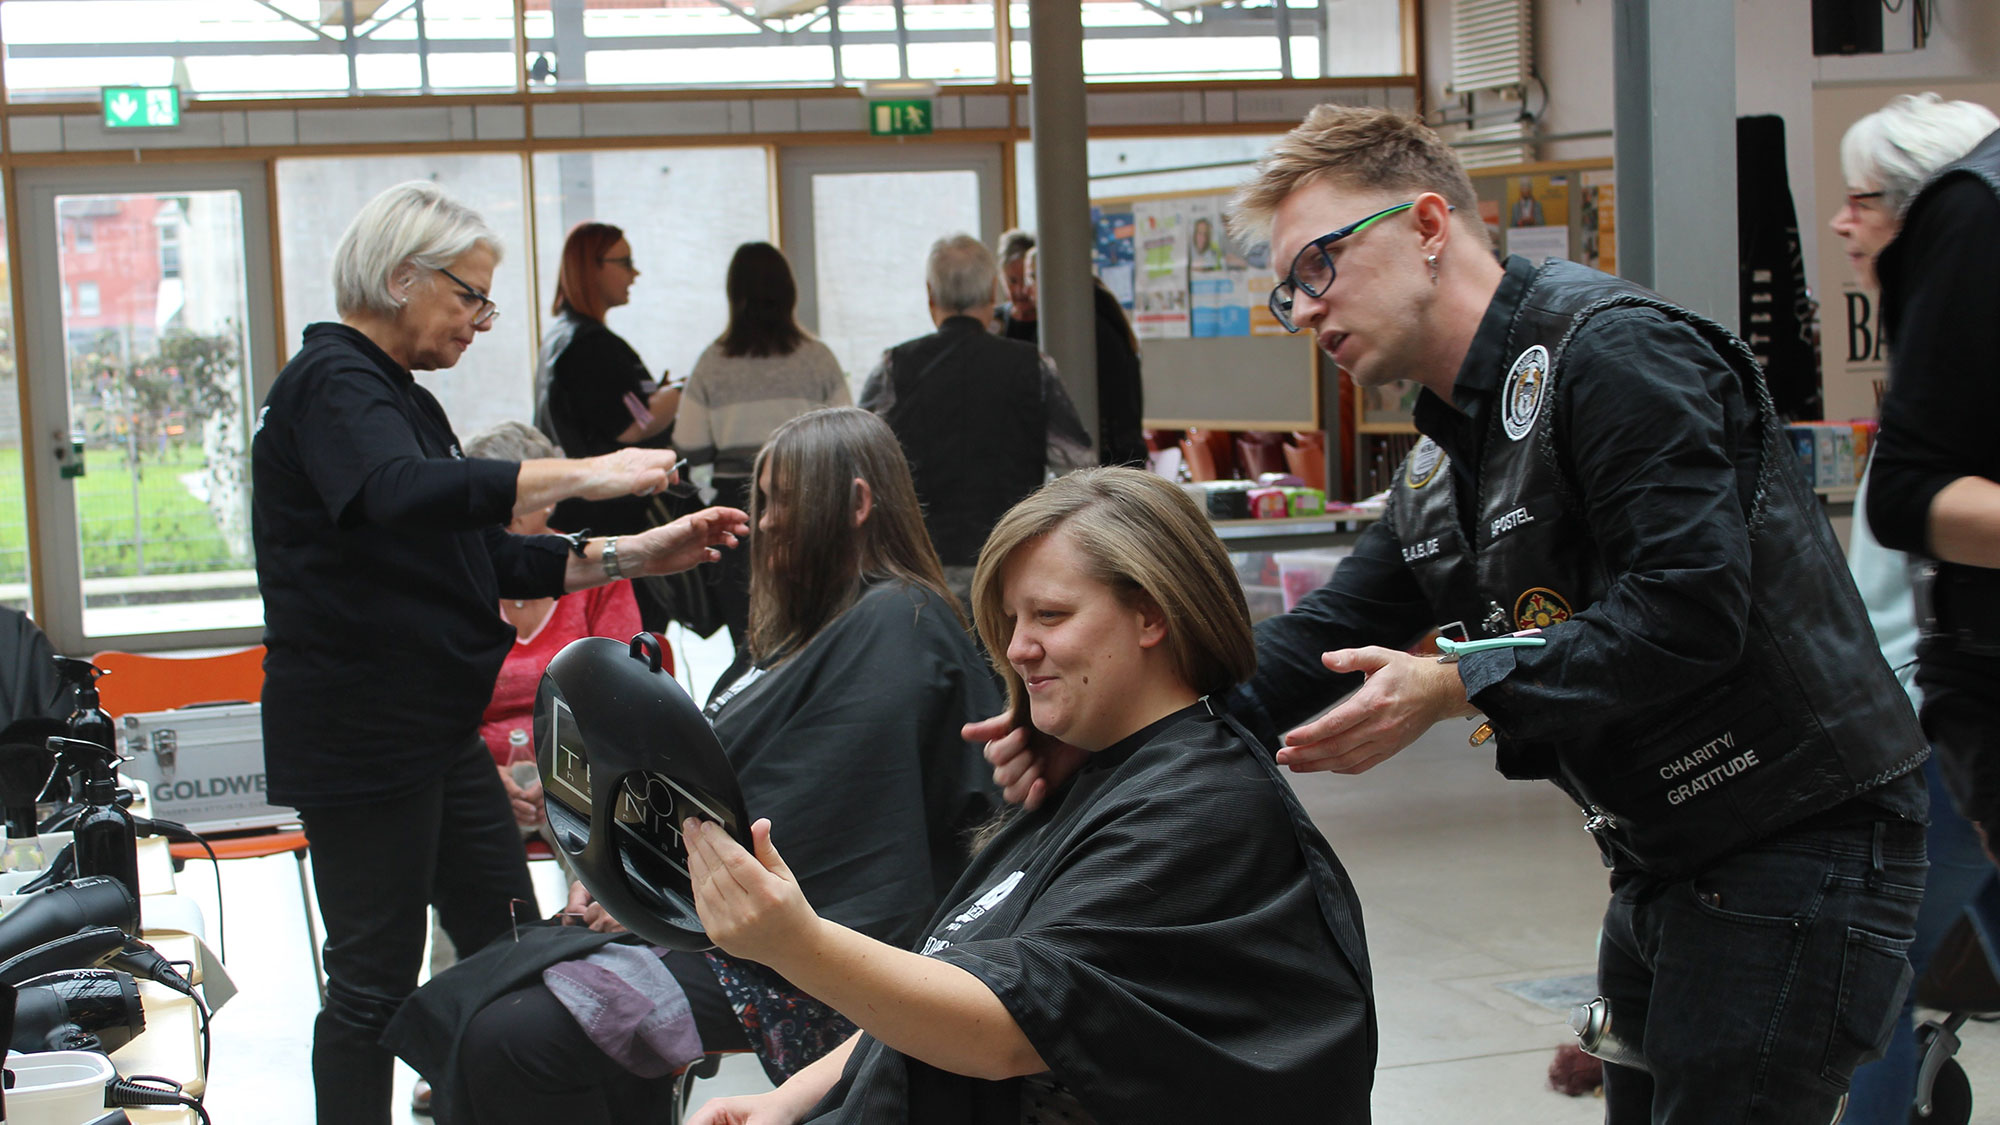 Friseure mit Herz in Lemgo, die Barber Angels schneiden Bedürftigen kostenlos die Haare